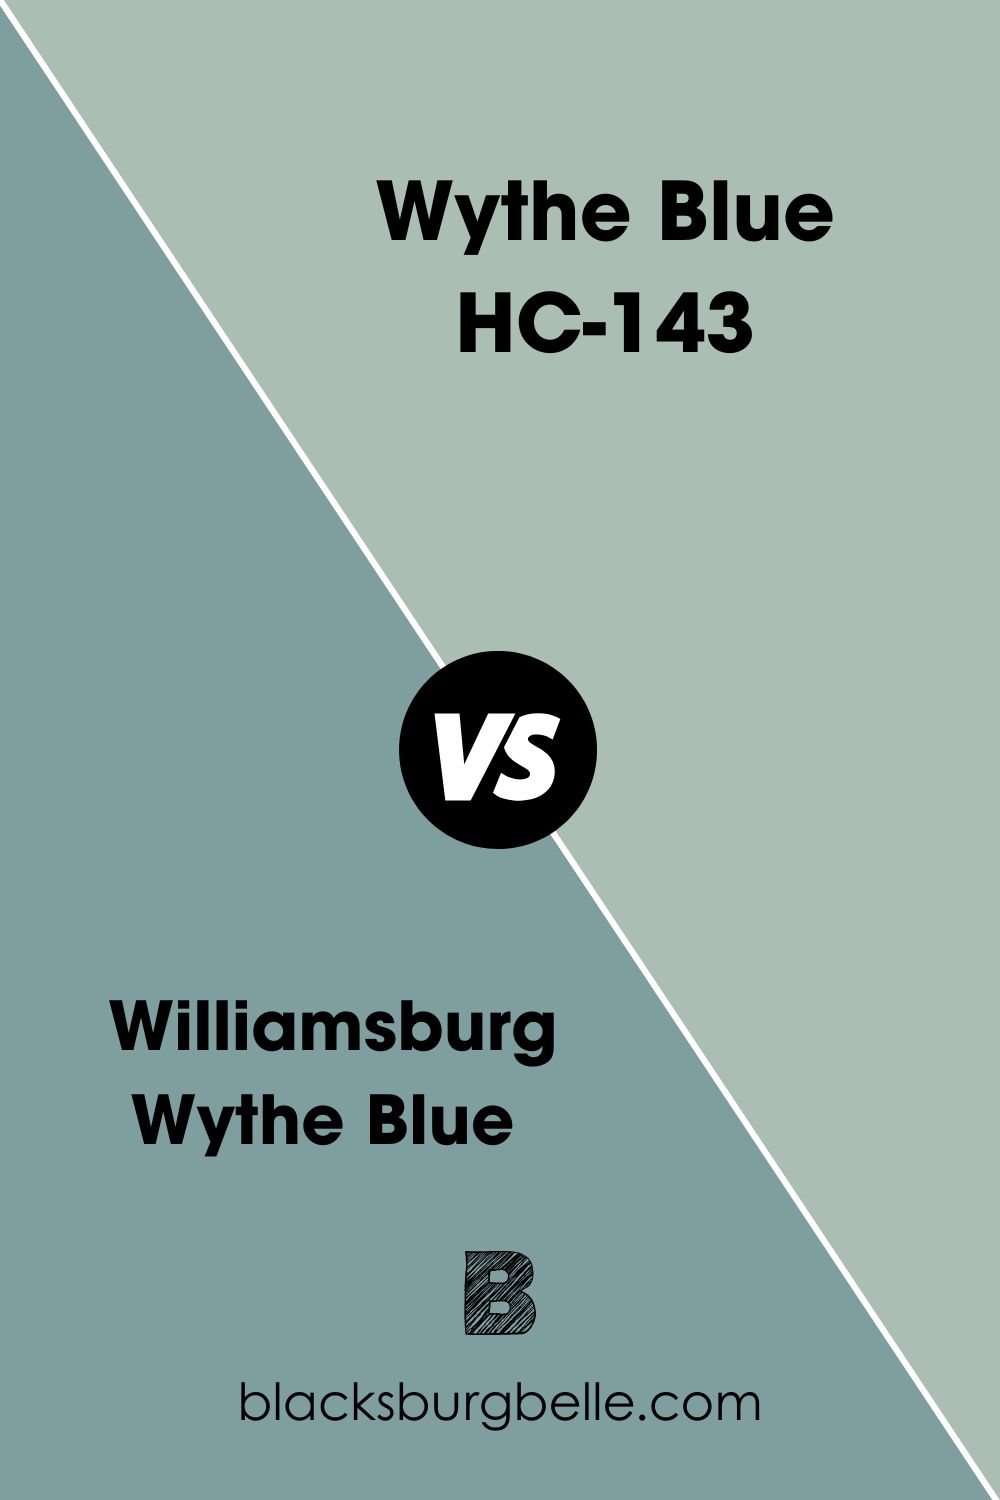 Wythe Blue HC-143 (9)